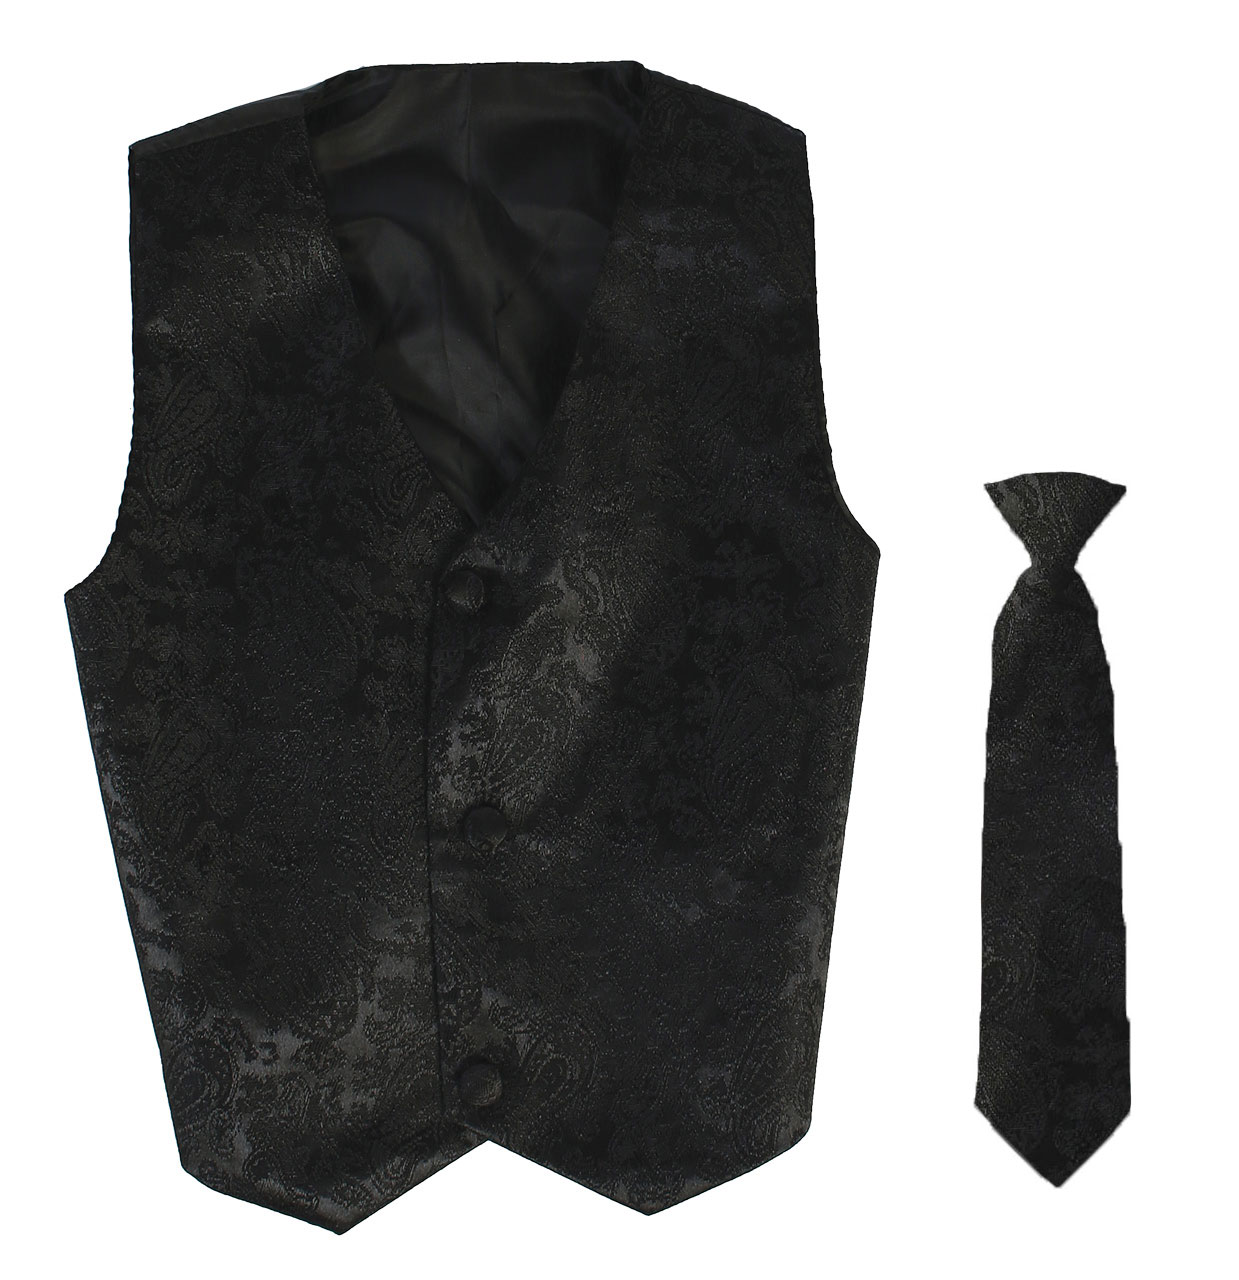 Vest and Clip On Boy Necktie set - Black Paisley - 4T